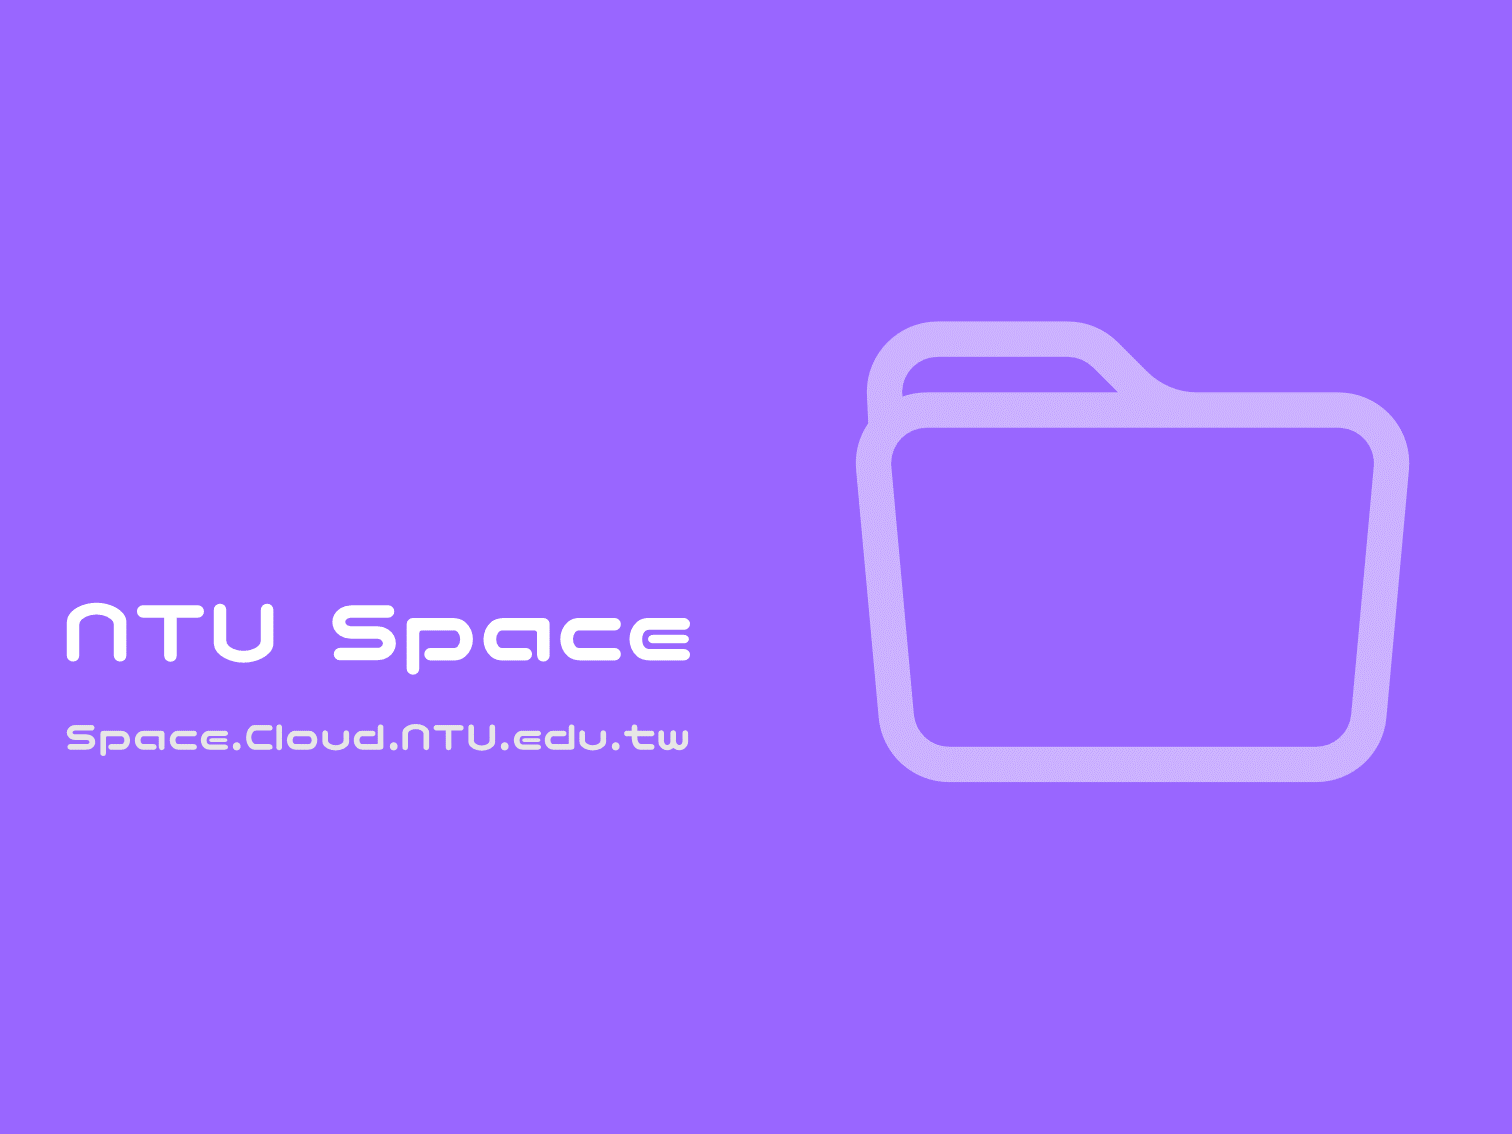 NTU Space